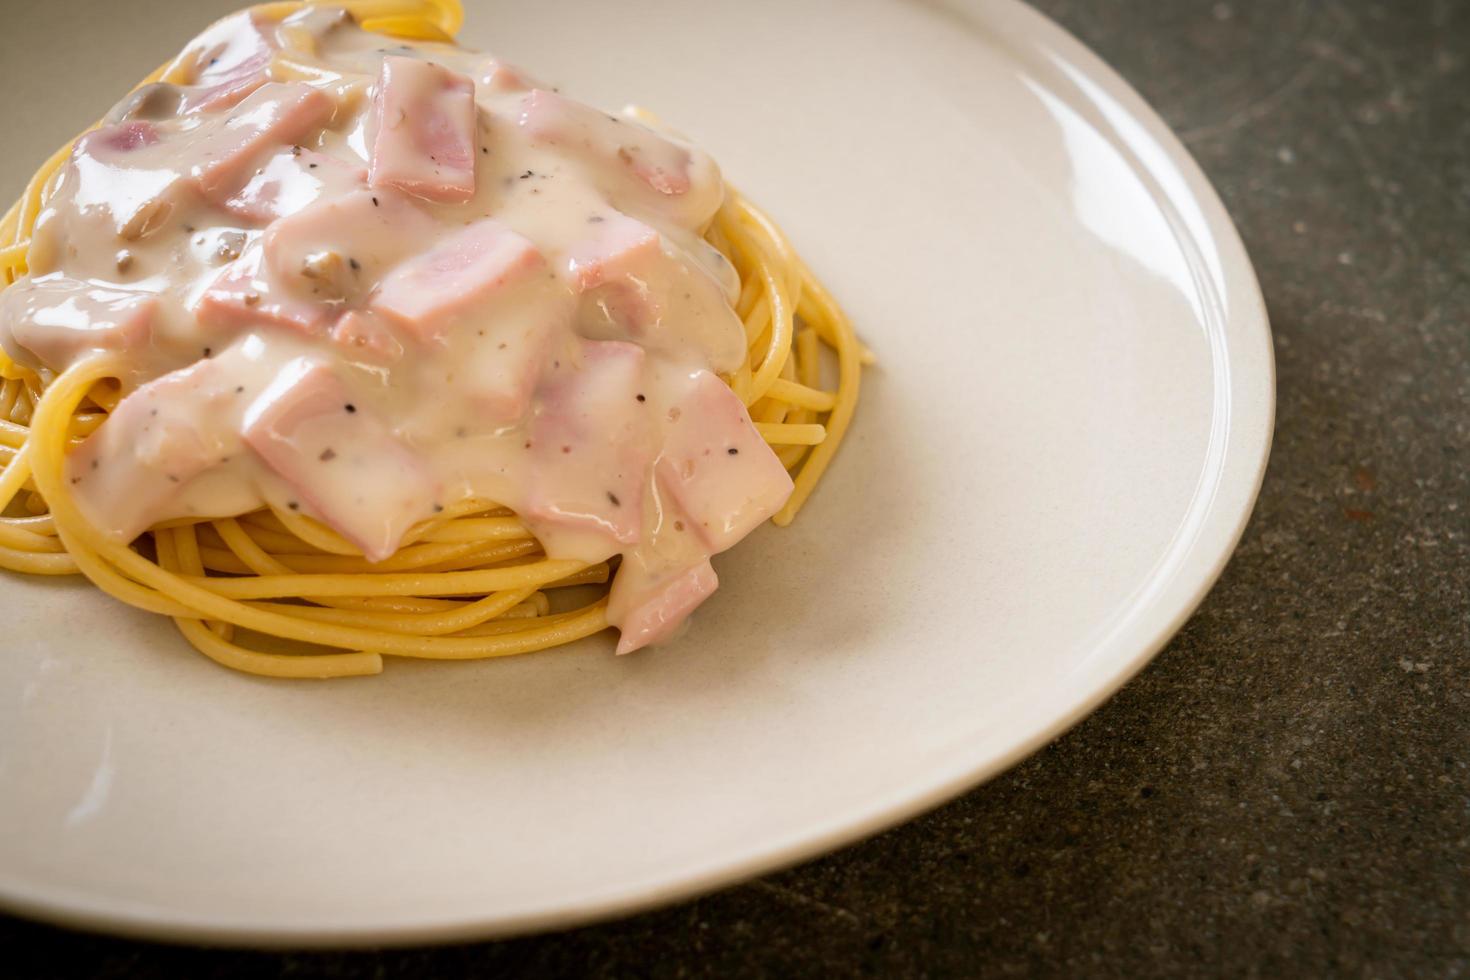 espaguete caseiro com molho de creme branco com presunto - comida italiana foto